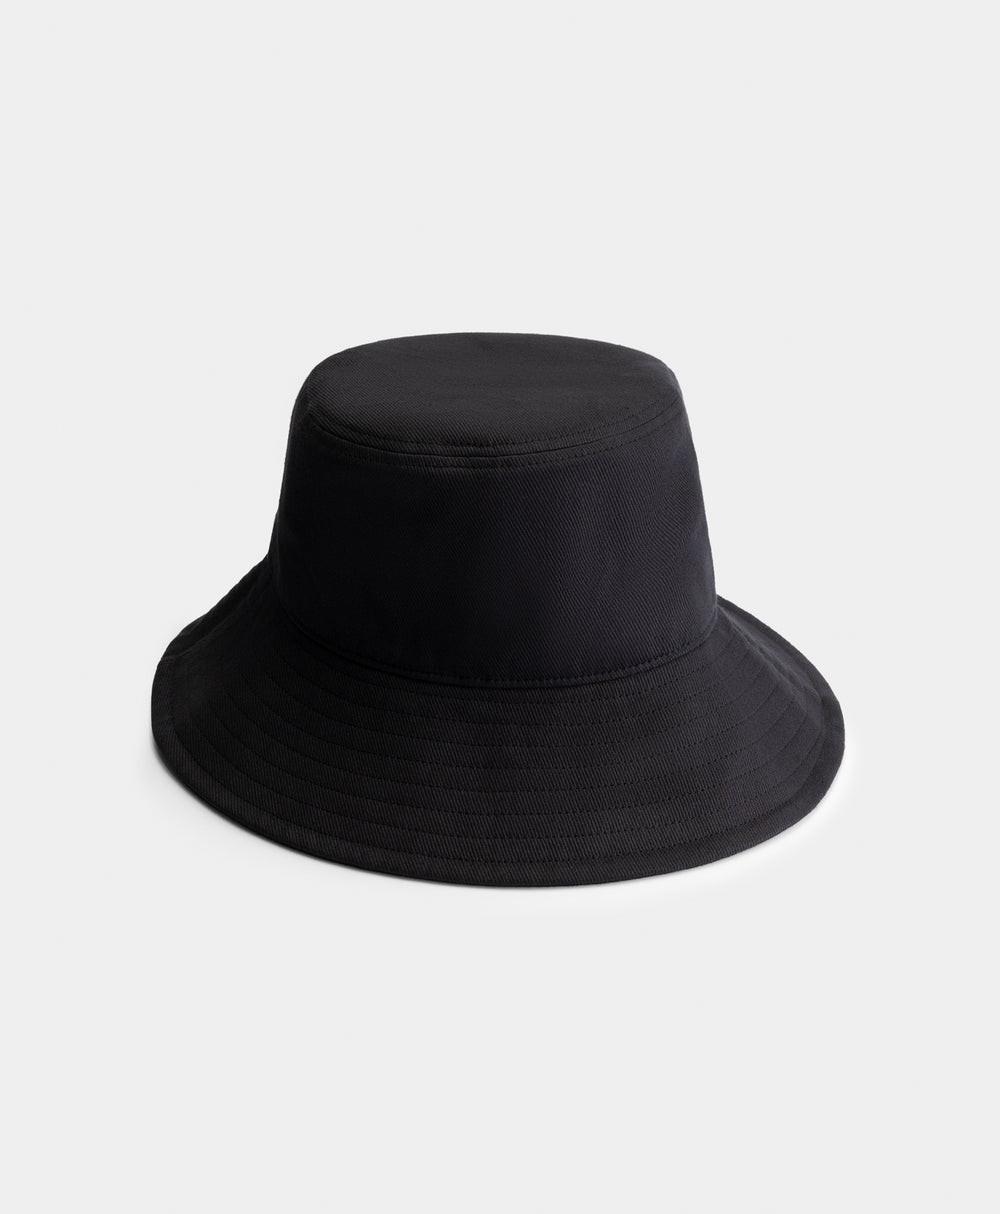 DP - Black Niu Bucket Hat - Packshot - Rear